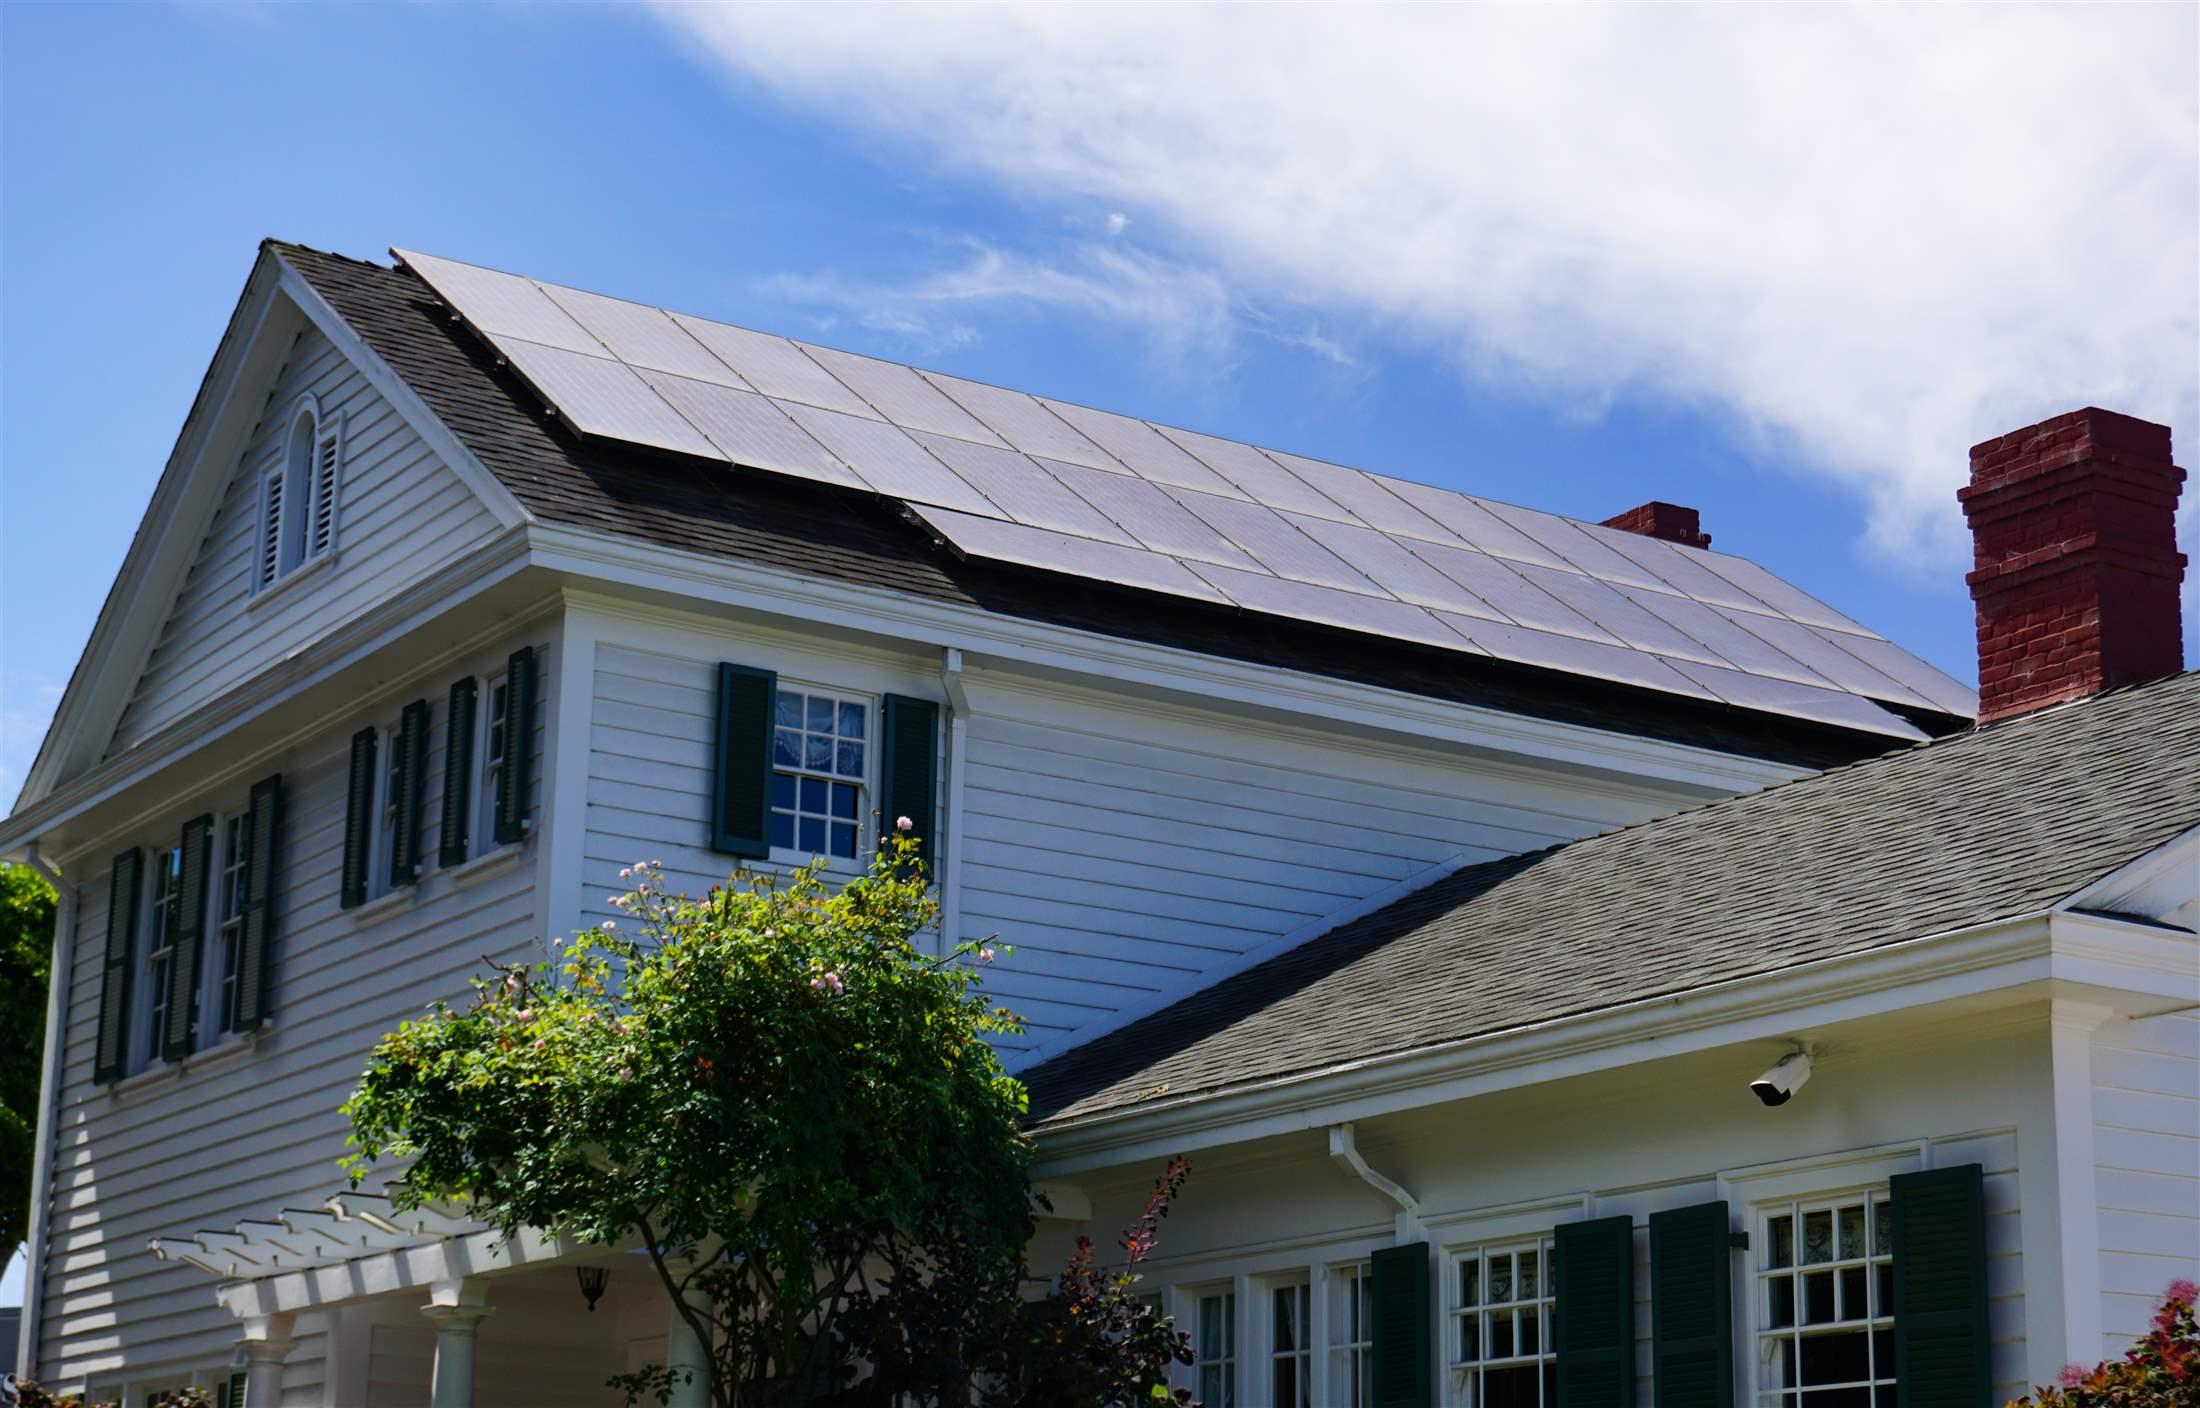 Sistema de baterías solares en el hogar: la opción de energía